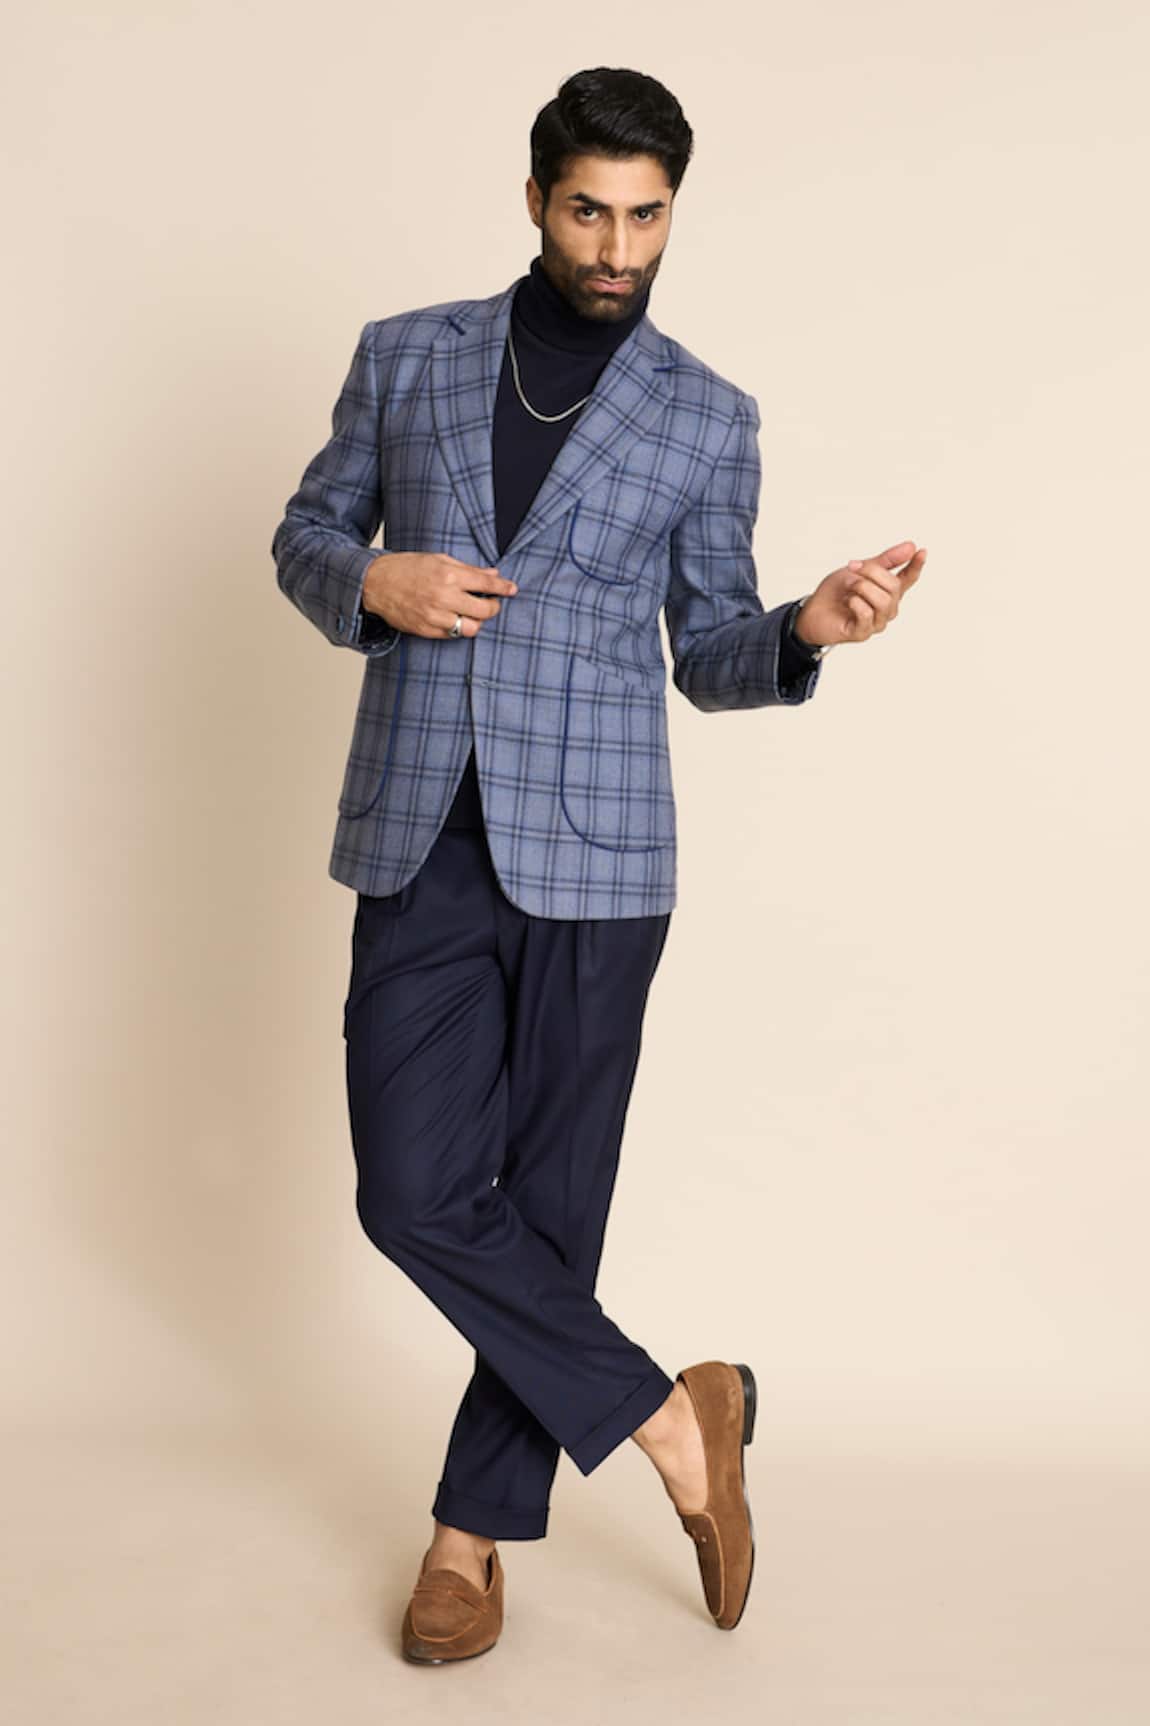 Gargee Designers Checkered Pattern Tweed Blazer